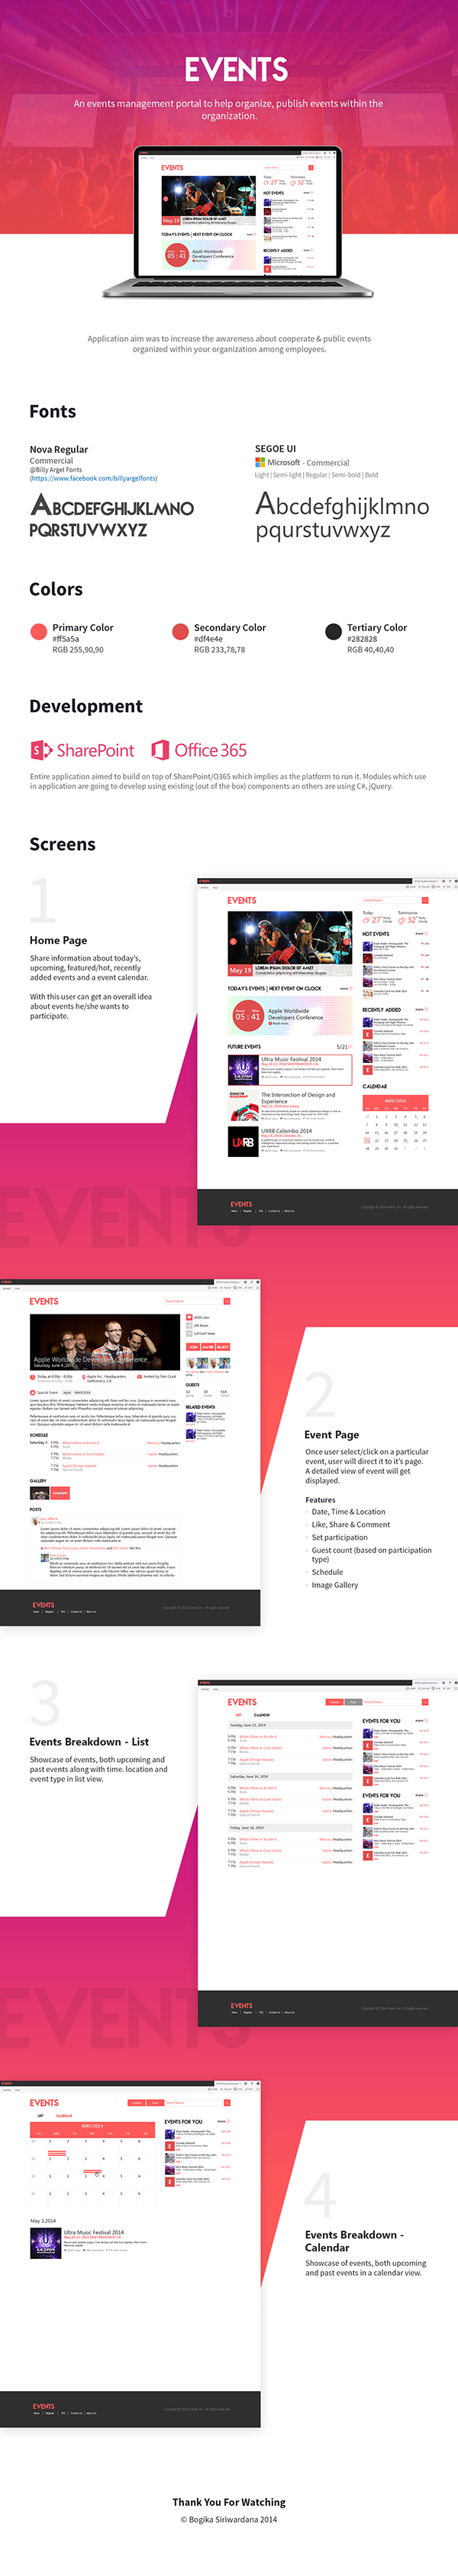 Events Management App